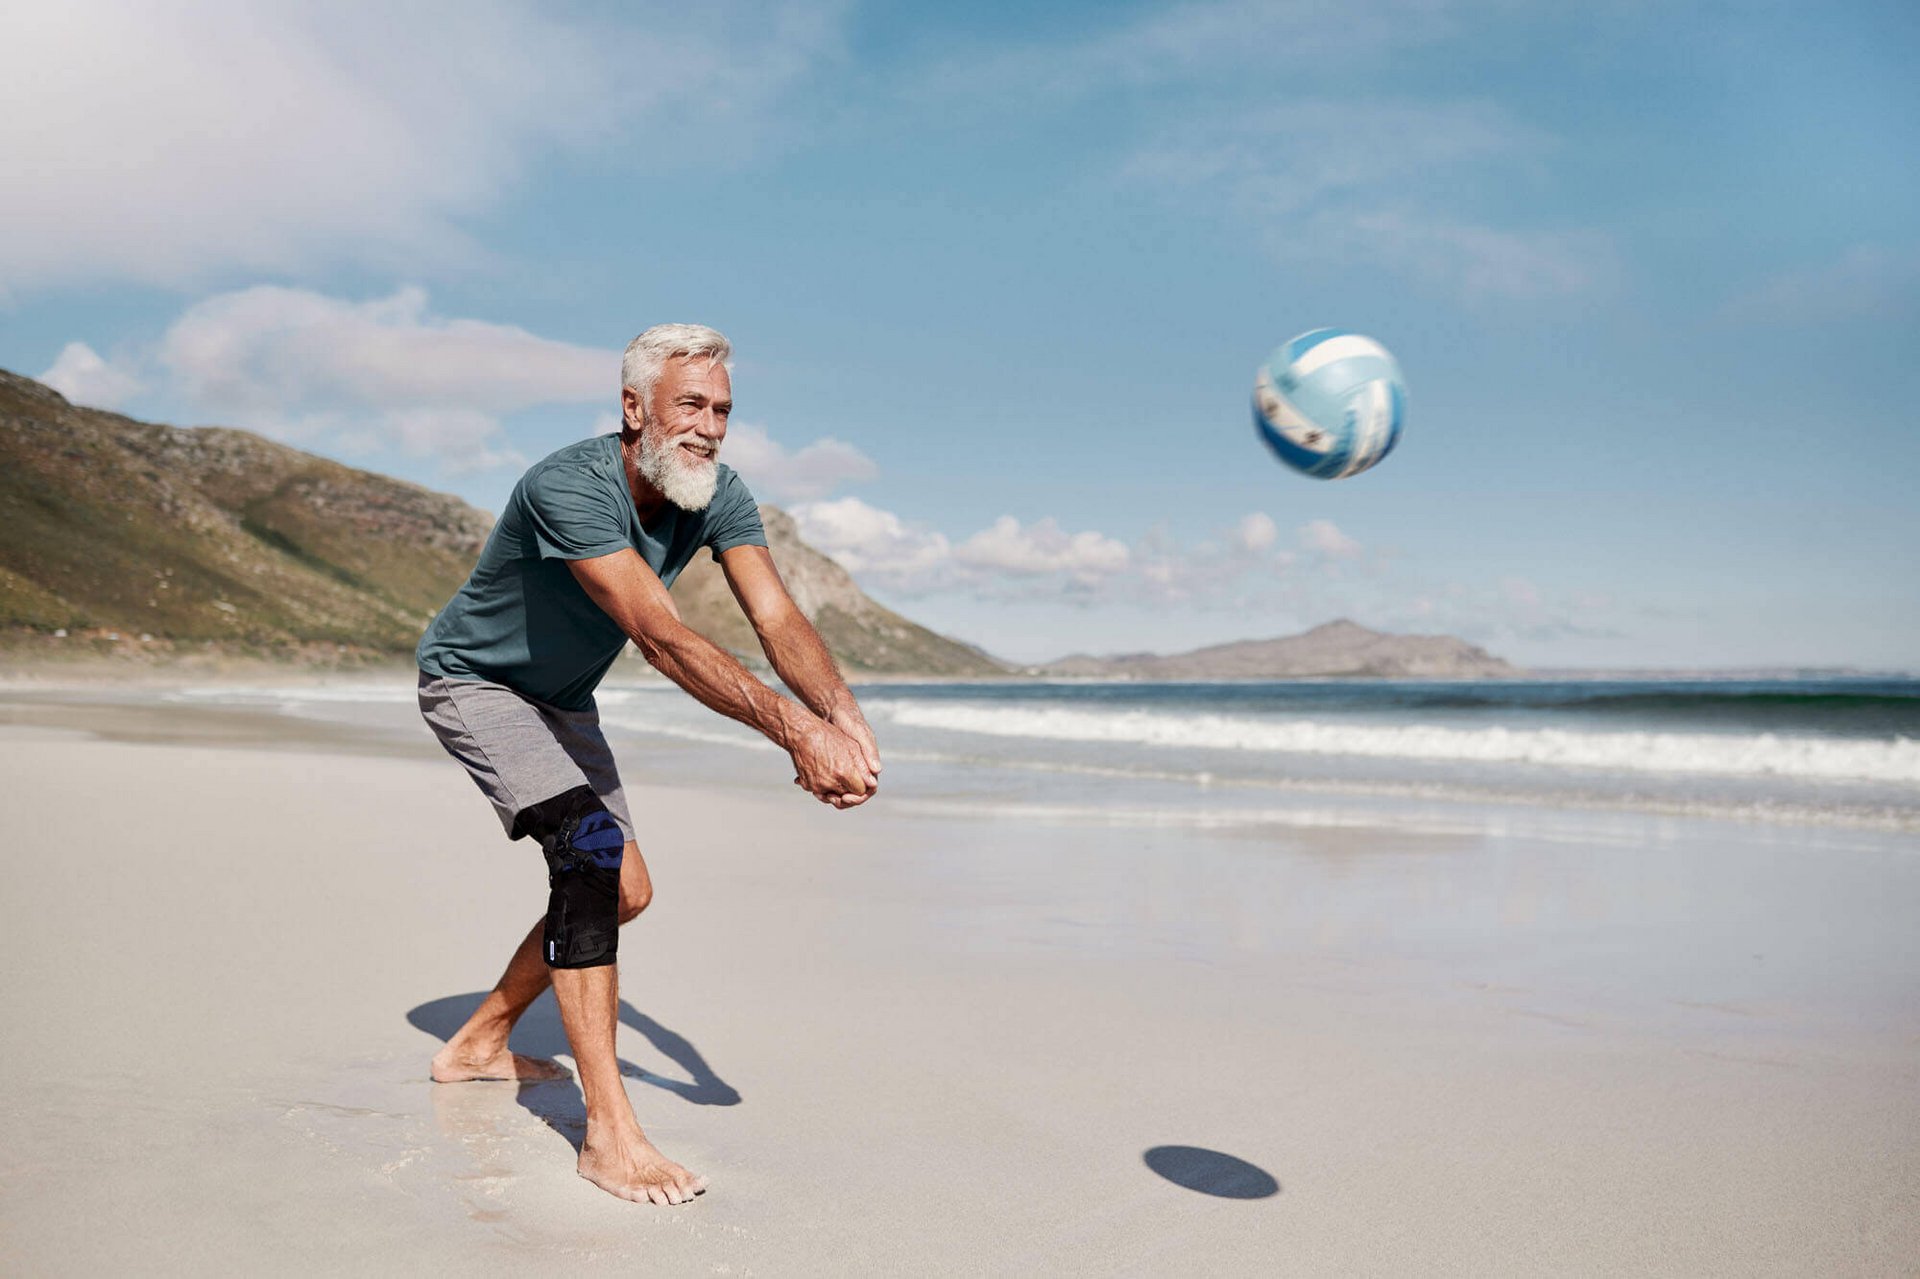 Ein Mann steht an einem Sandstrand und spielt einen Volleyball zurück. Er trägt eine GenuTrain OA Kniebandage von Bauerfeind für eine gezielte Entlastung und Stabilisierung bei Kniearthrose.